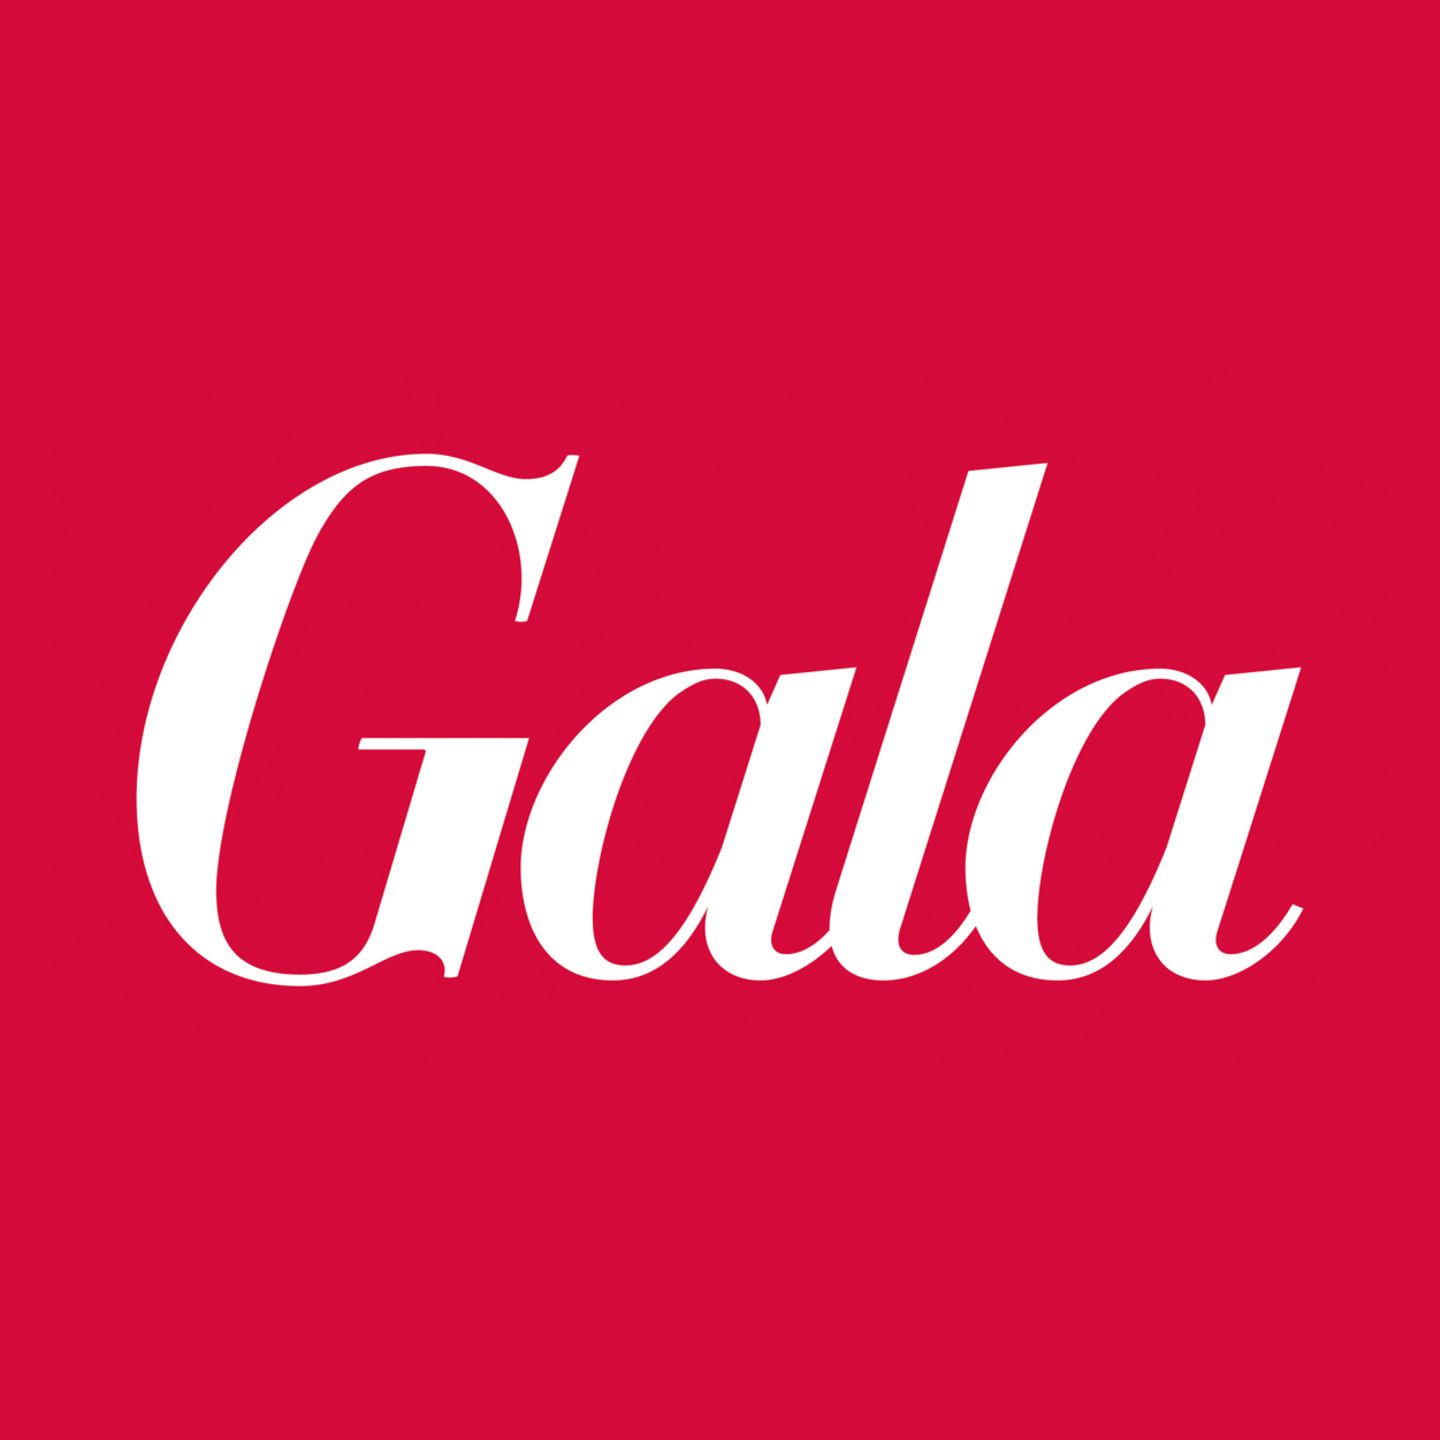 Im April 1994 ist die erste Ausgabe der Gala erschienen. 2019 freut sich die Redaktion und all die fleißigen Leser, über das mittlerweile 25-jährige Bestehen.